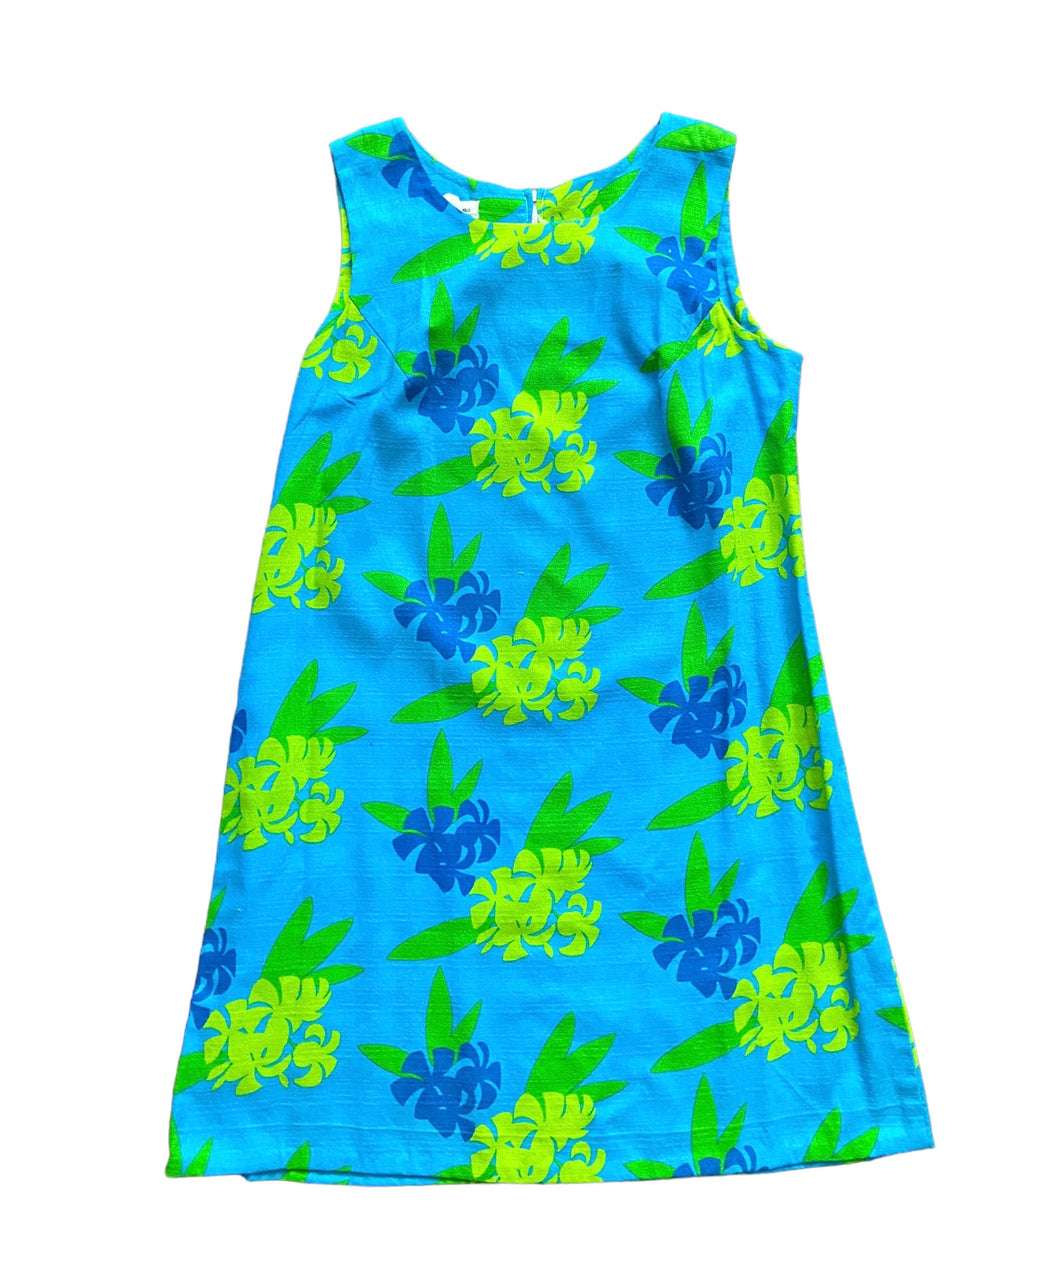 Vibrant Blue Hawaiian Mini Dress S/M